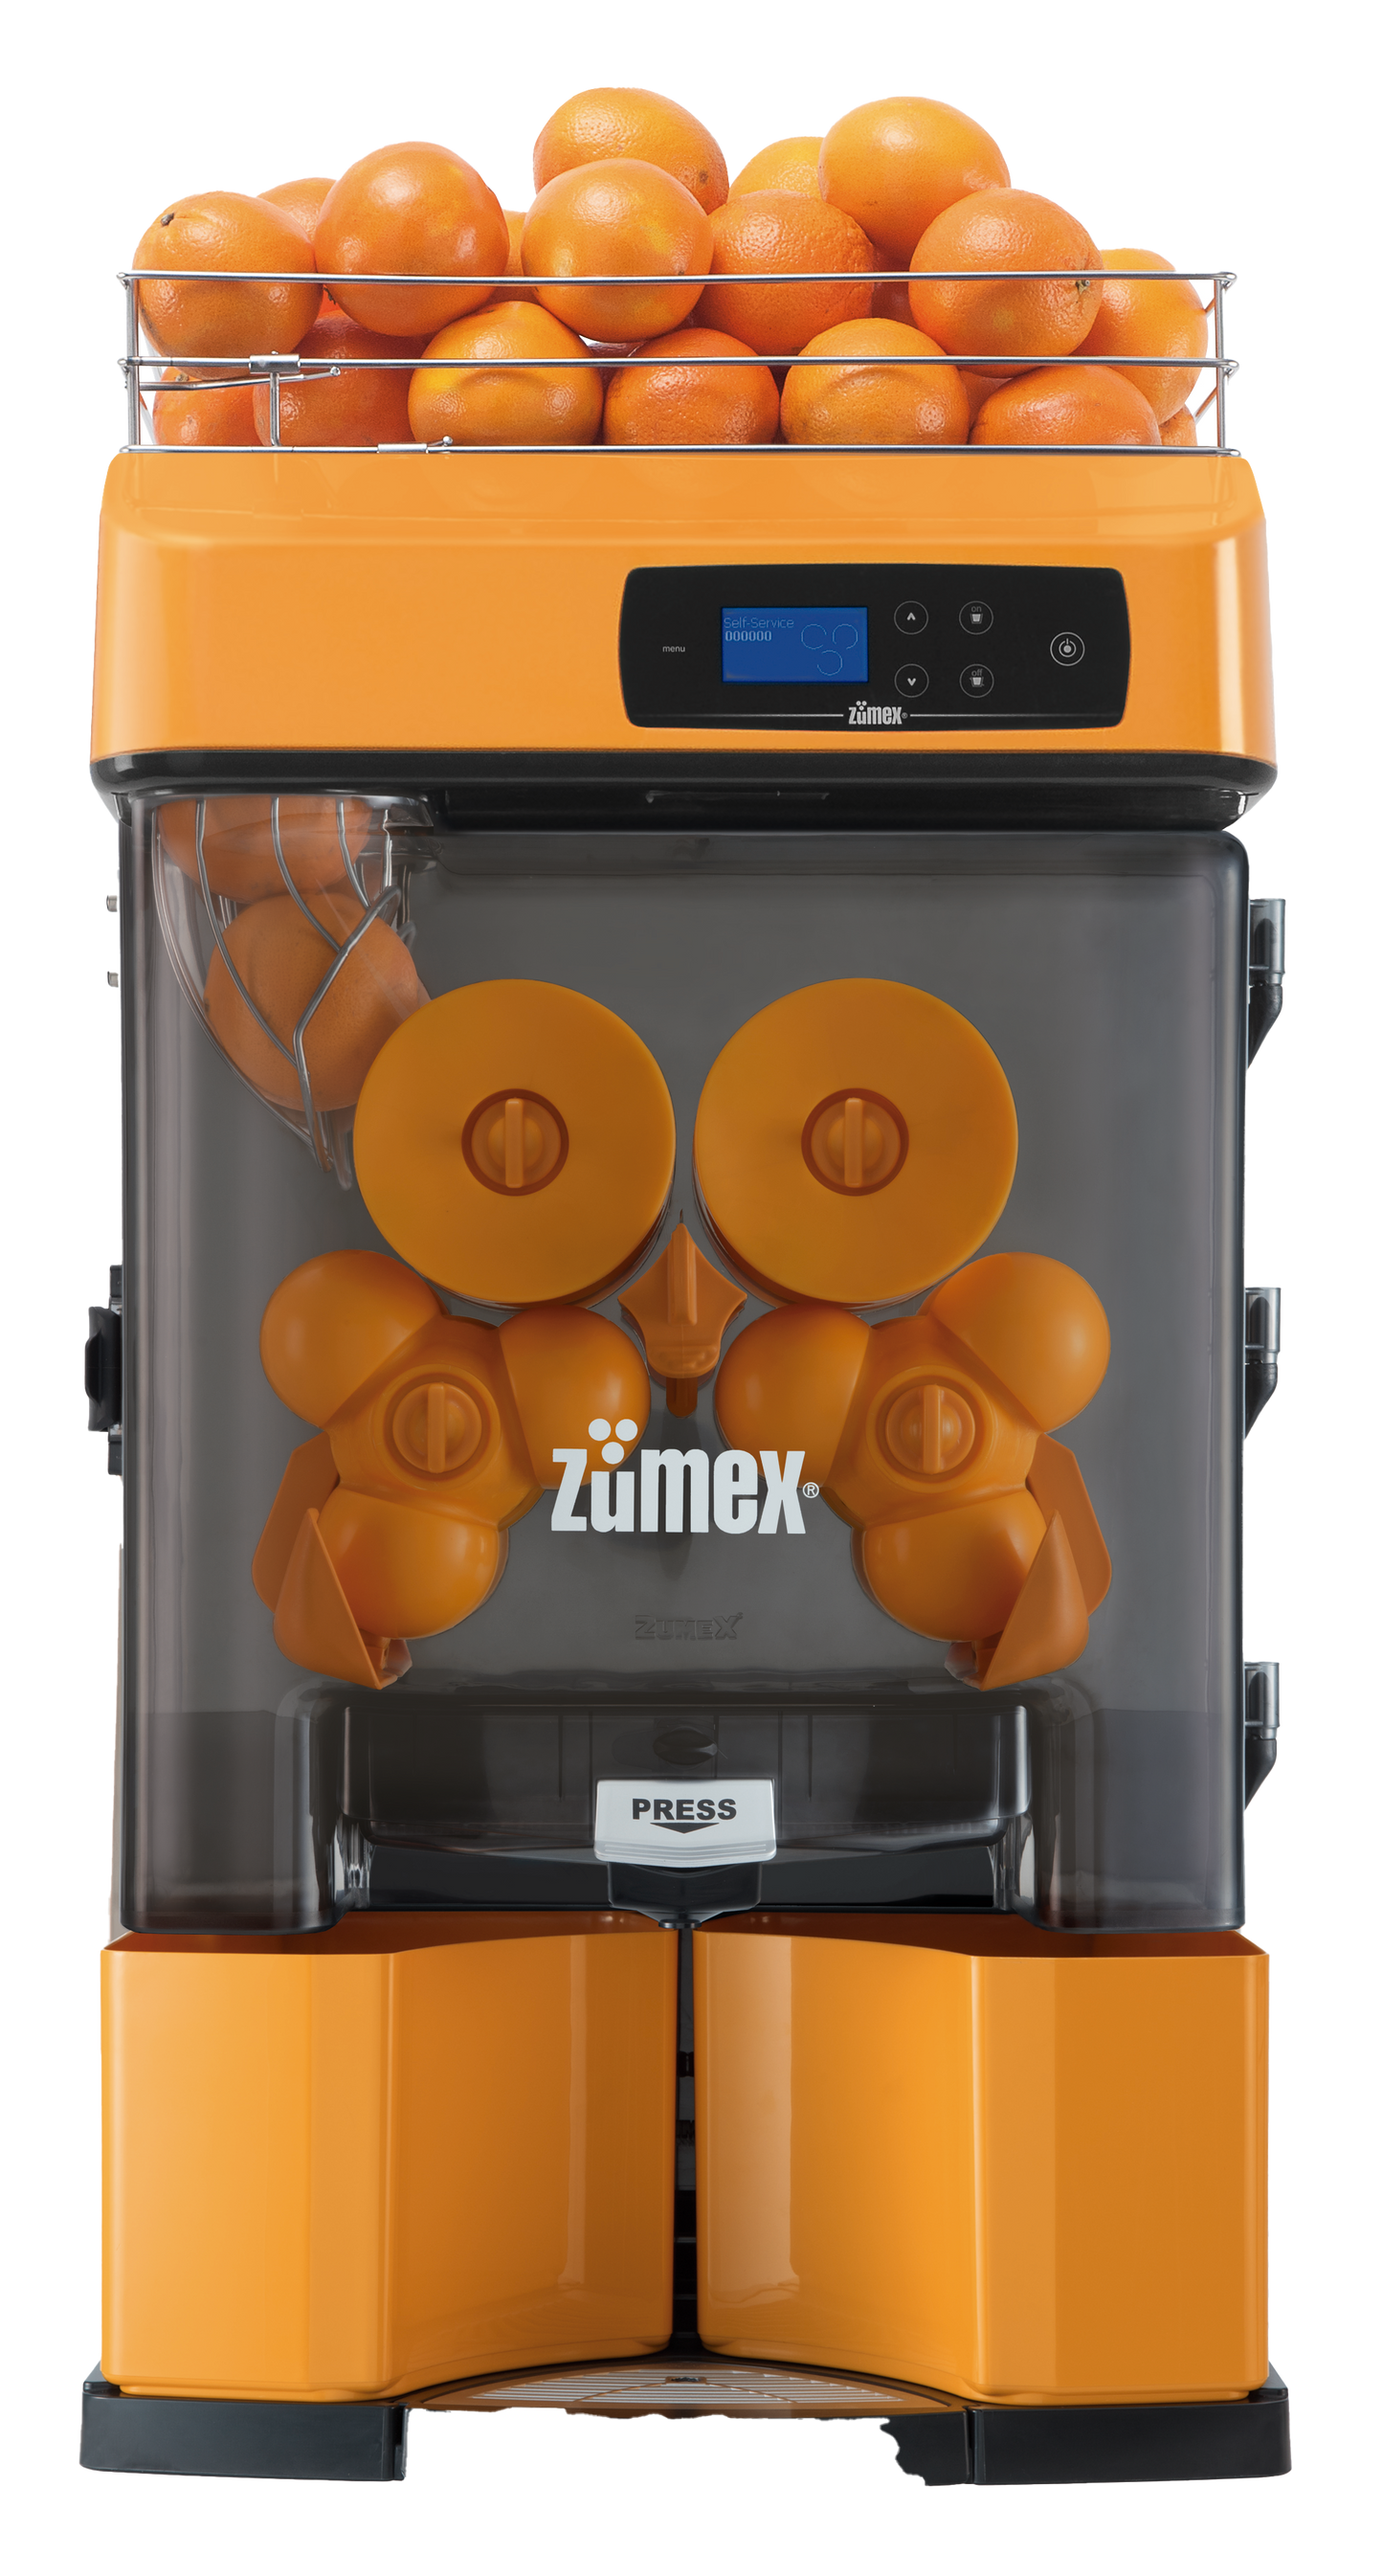 Zumex Citrus Juicer Versatile Pro